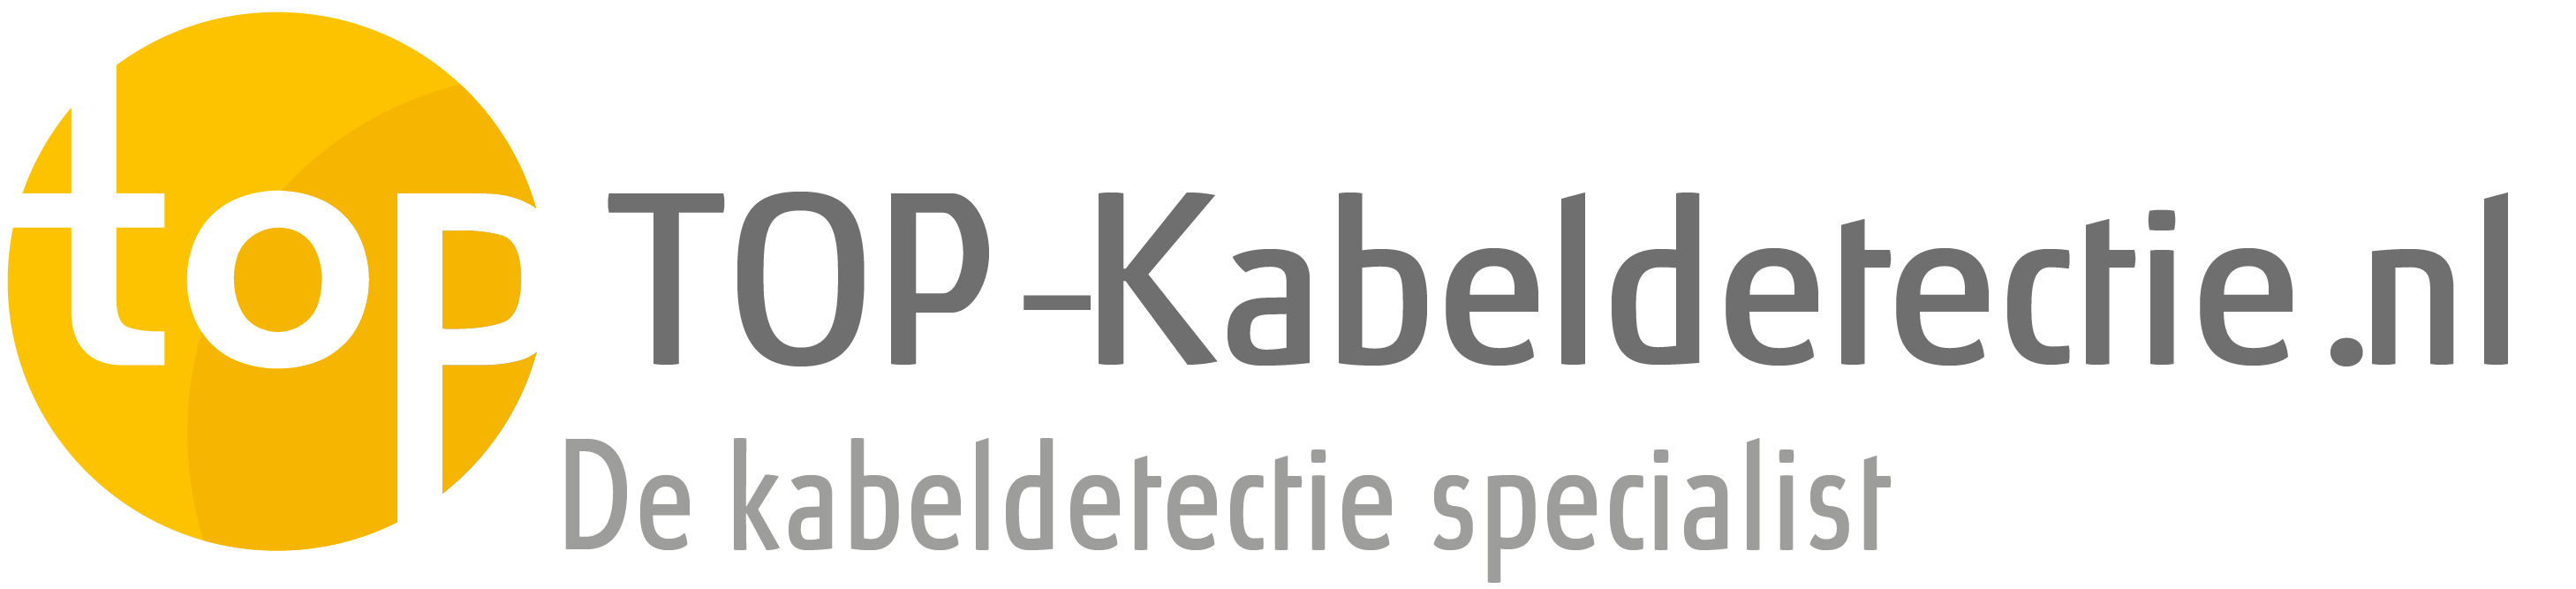 TOP-Kabeldetectie.nl - De specialist in kabeldetectie!